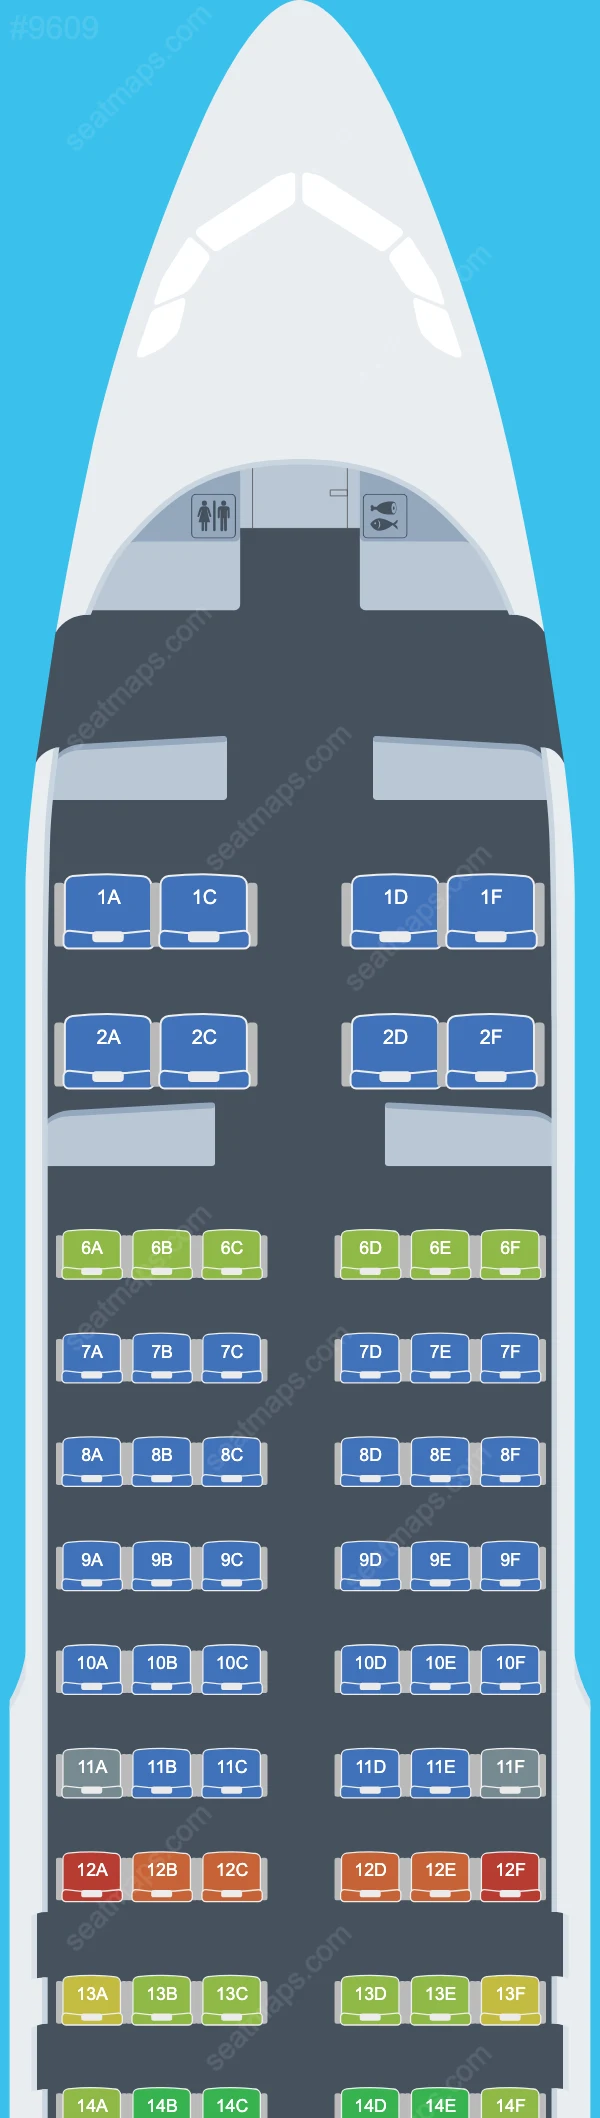 Etihad Airways Airbus A320 Seat Maps A320-200 V.1